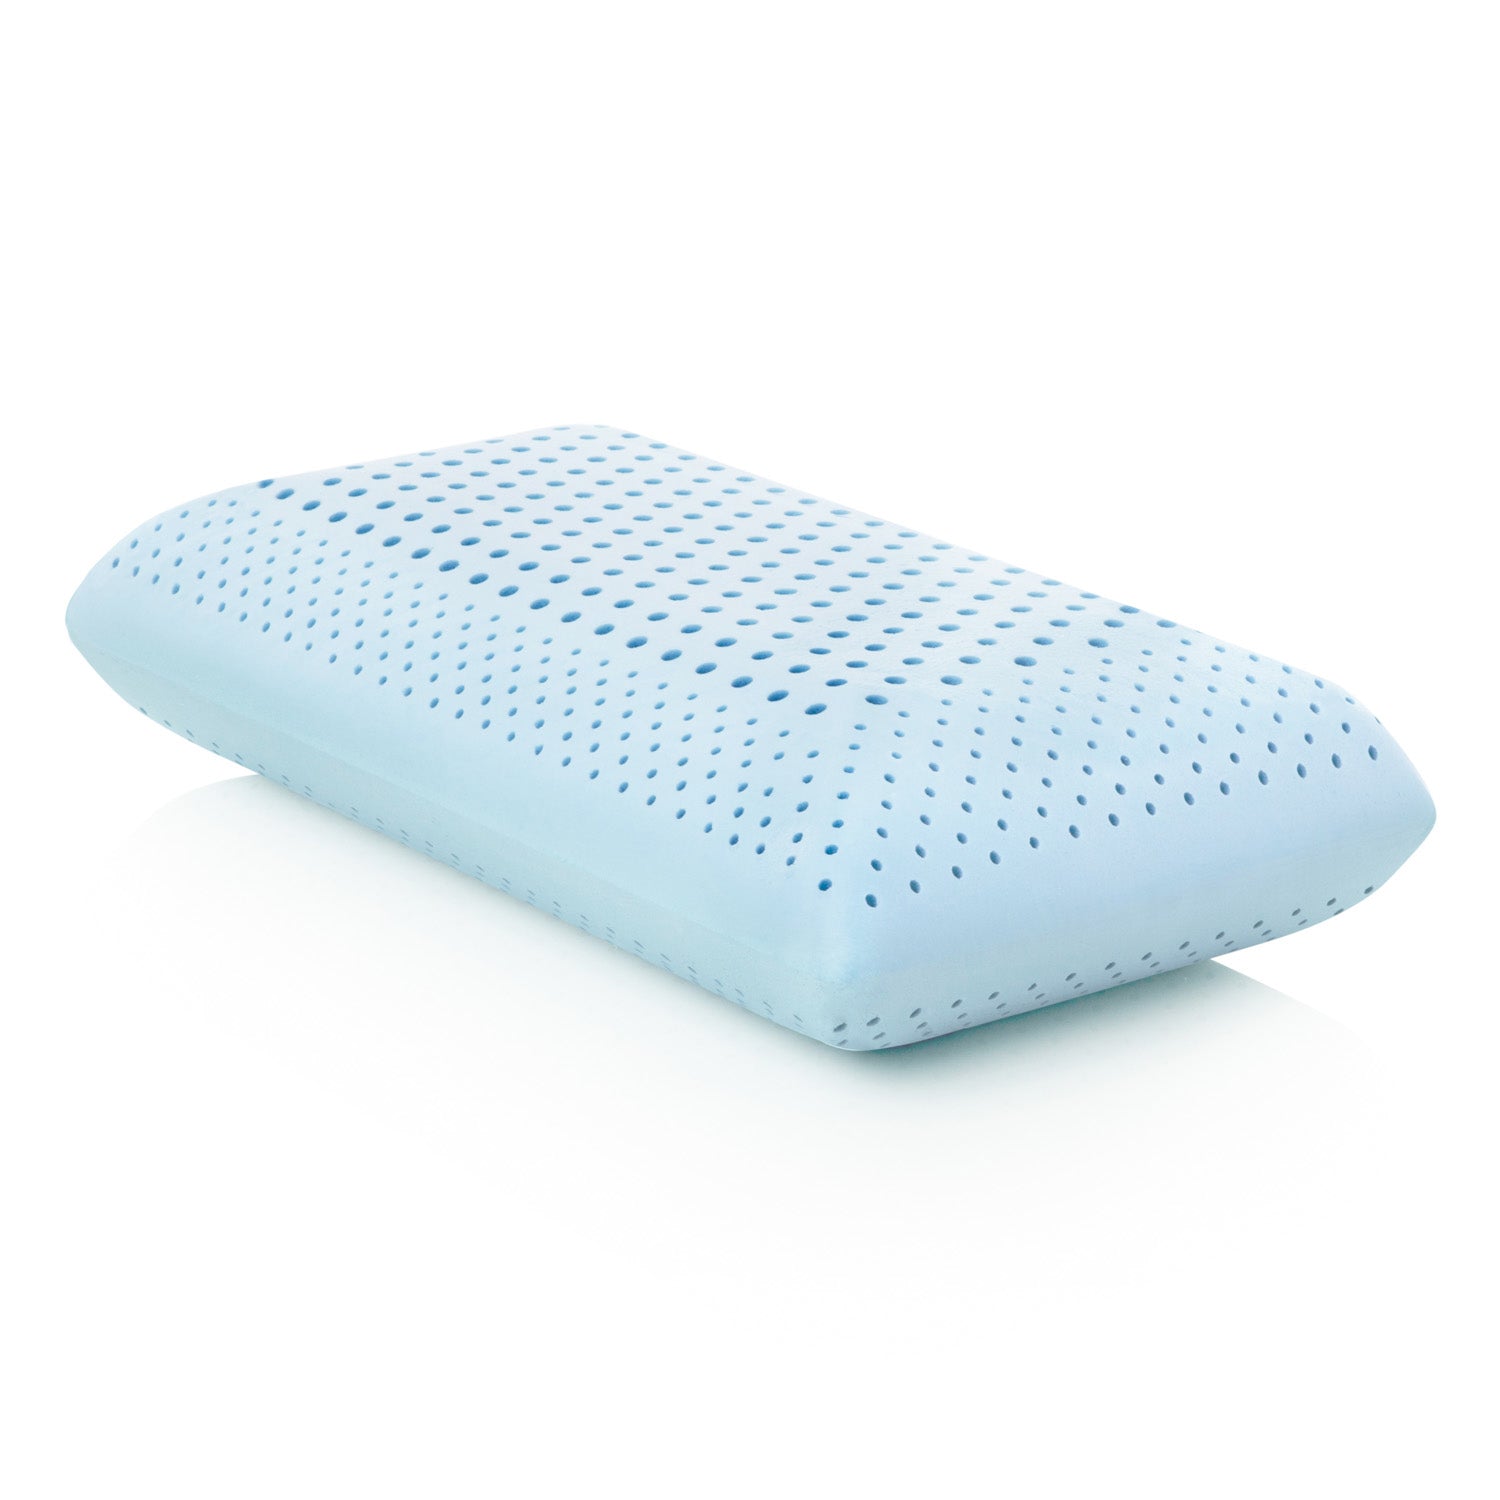 Zoned Gel Dough Pillow - Ultimate Comfort Sleep